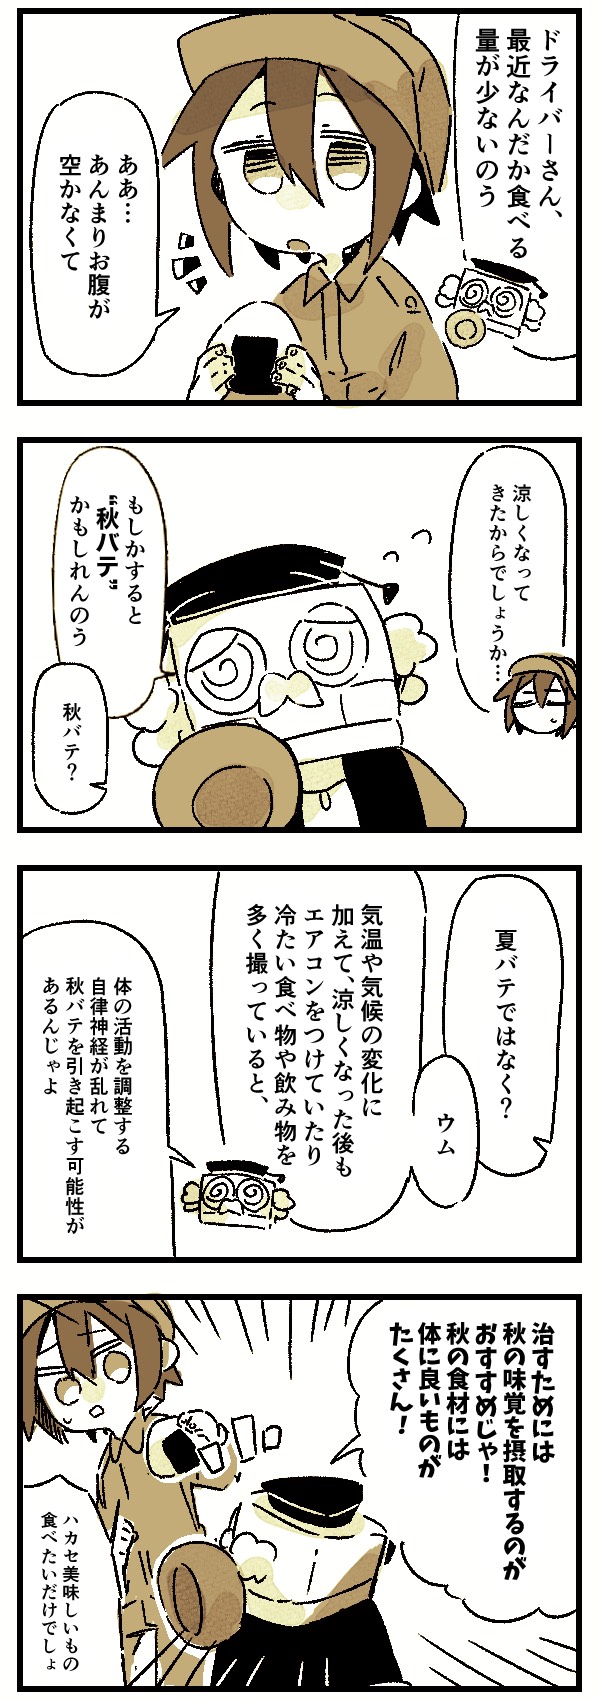 ドラ博士 4コマ漫画 19 秋バテ ドラever